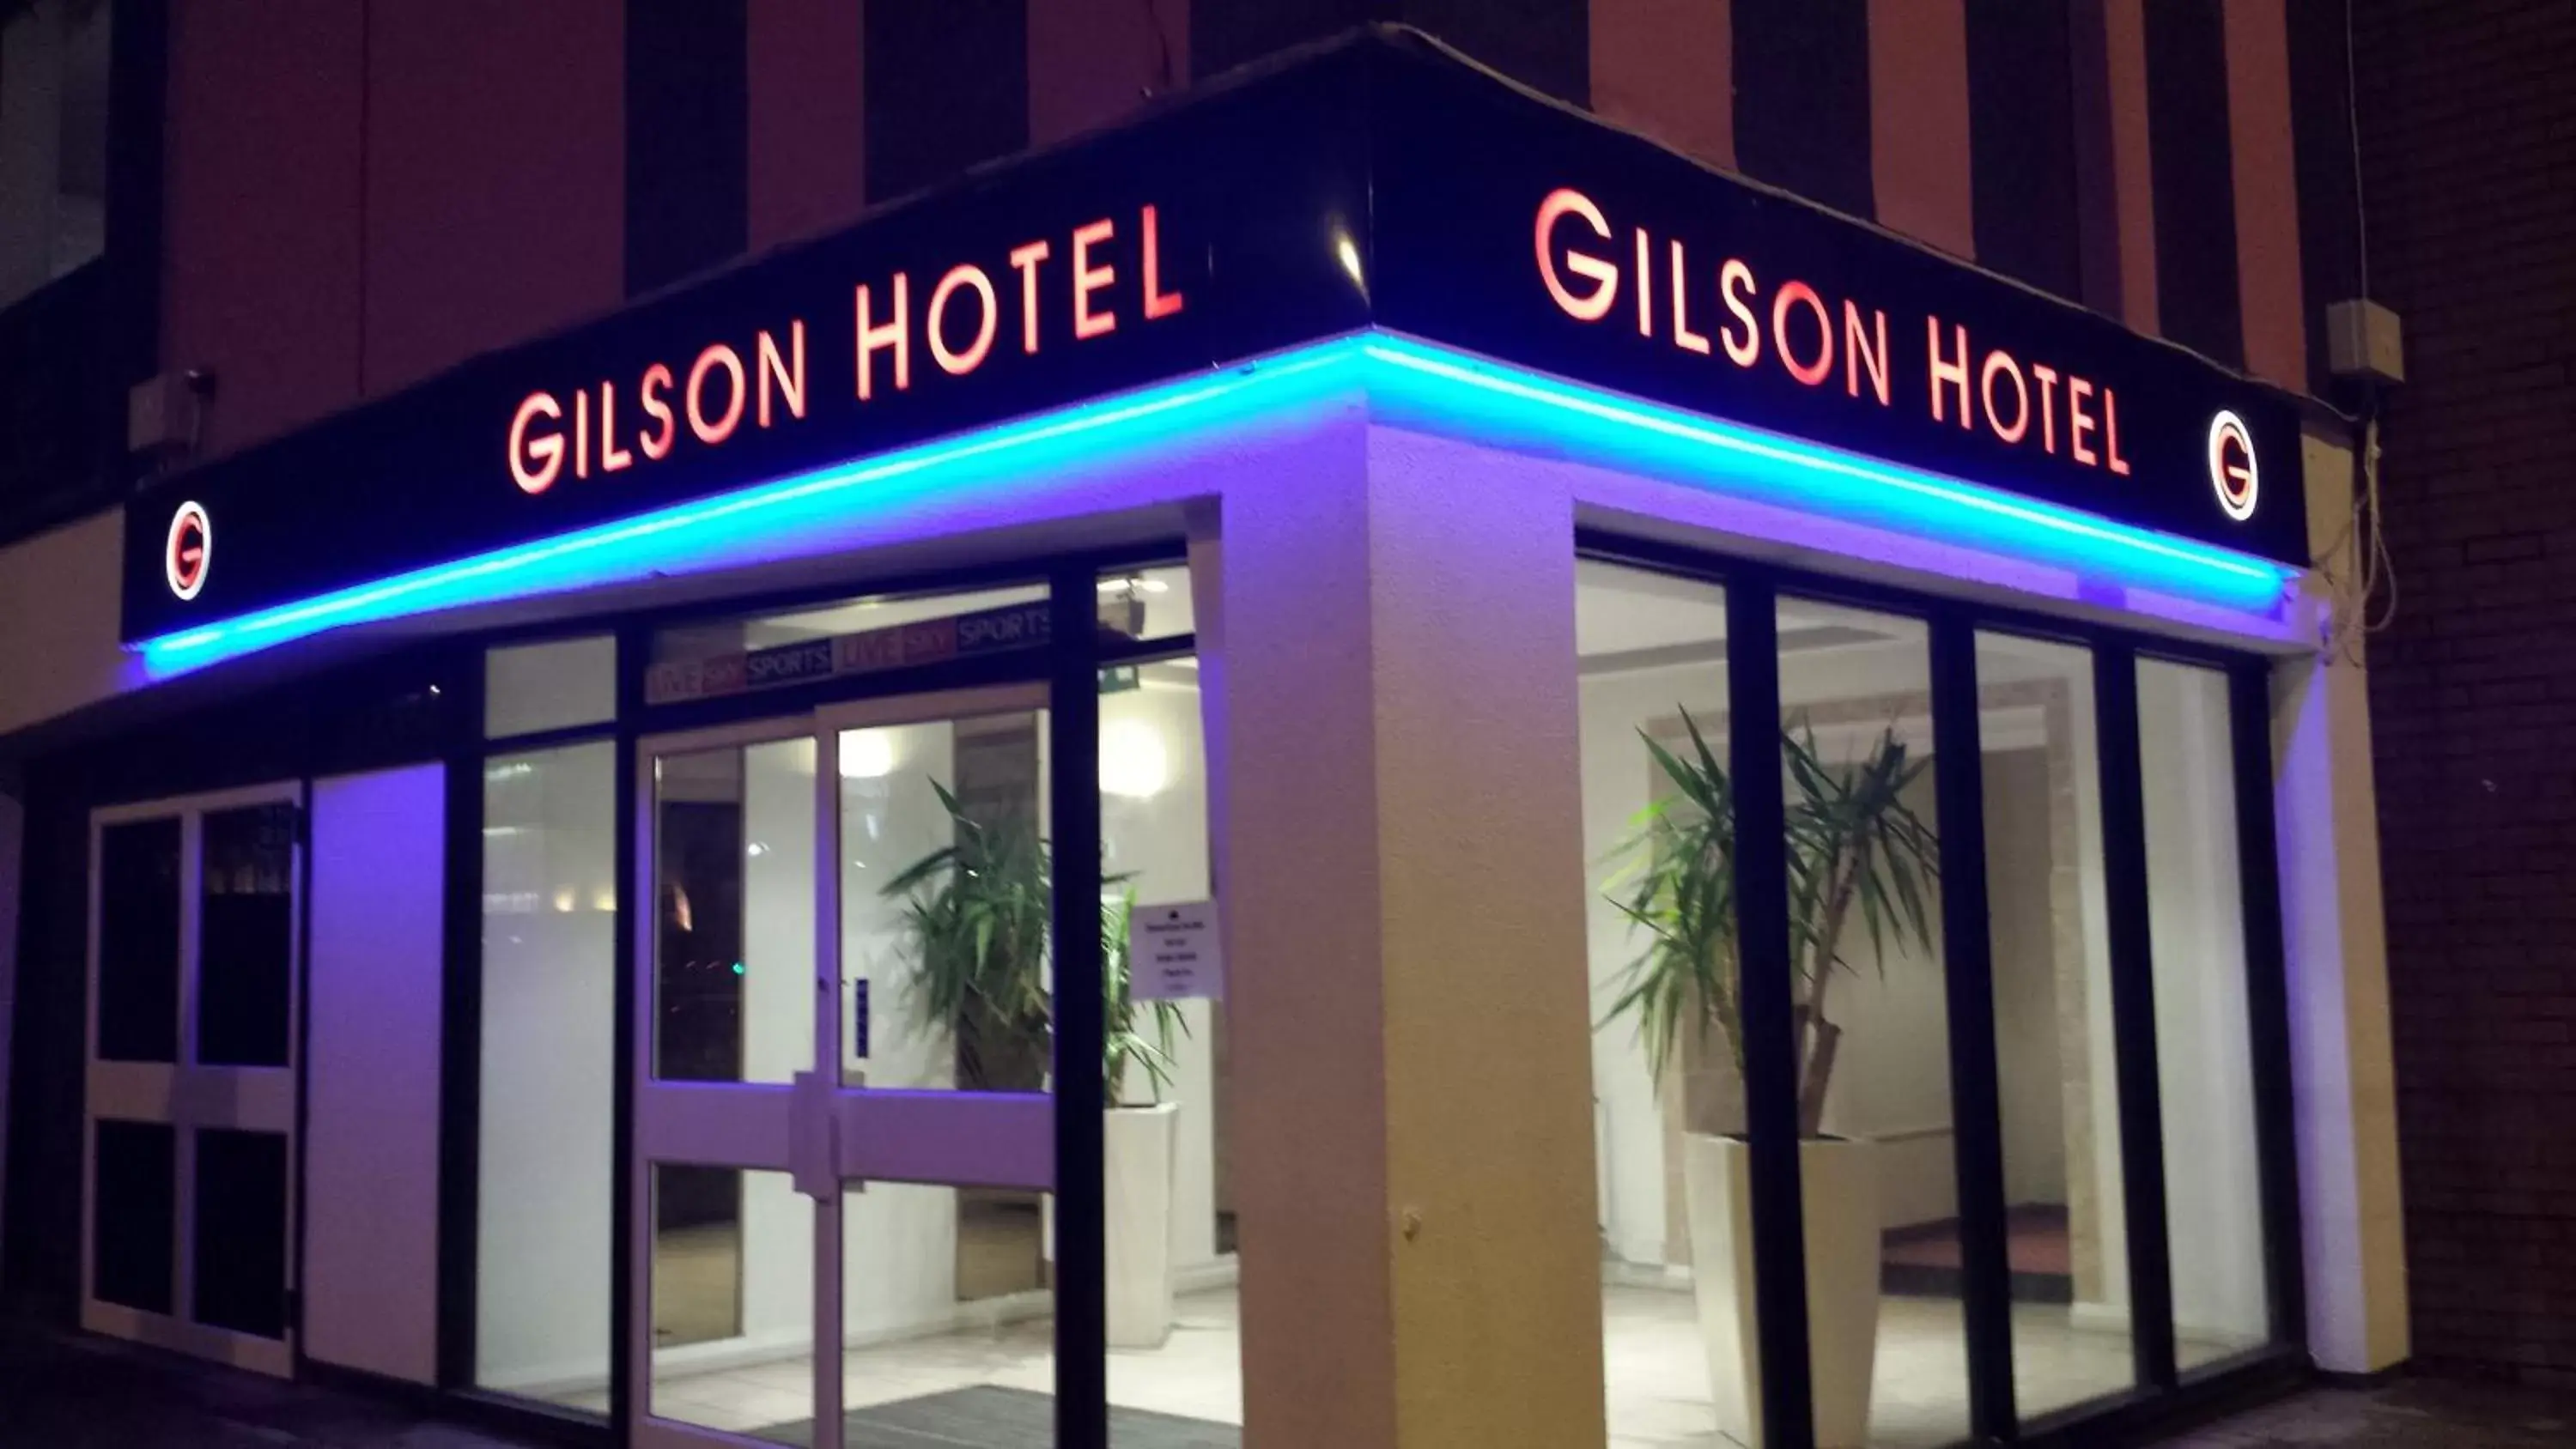 Facade/entrance in Gilson Hotel